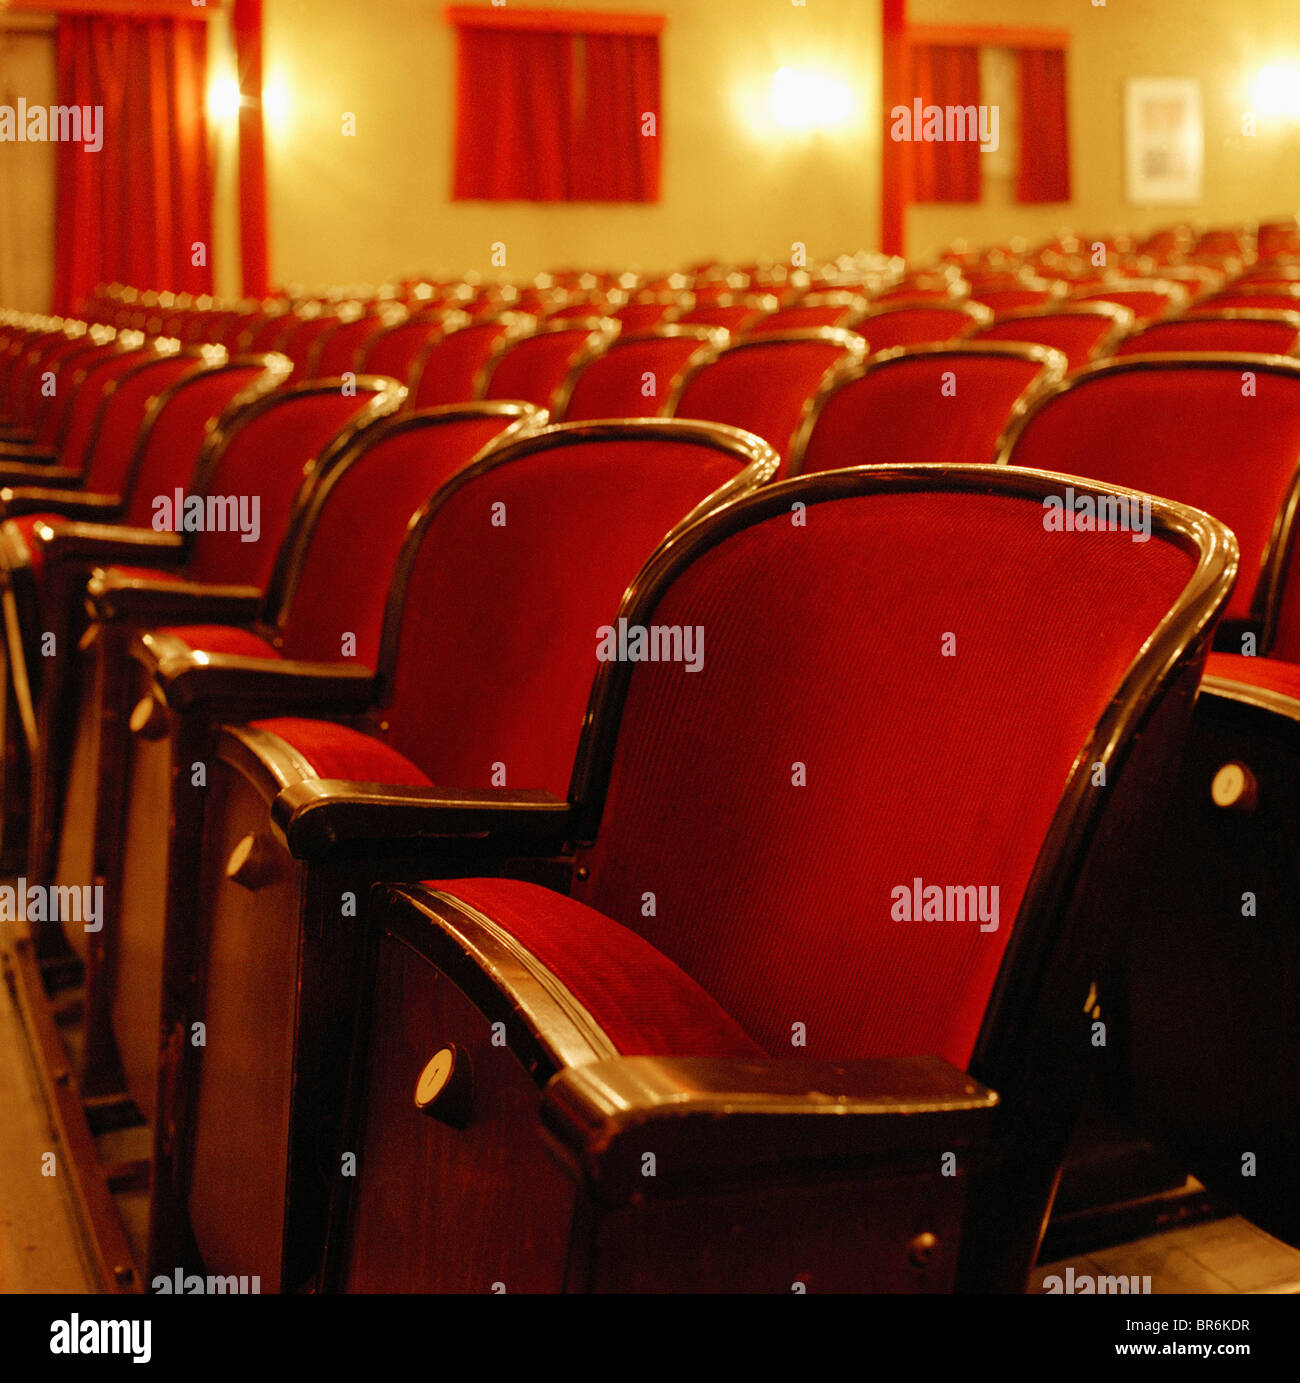 Rangées de sièges dans un théâtre Banque D'Images